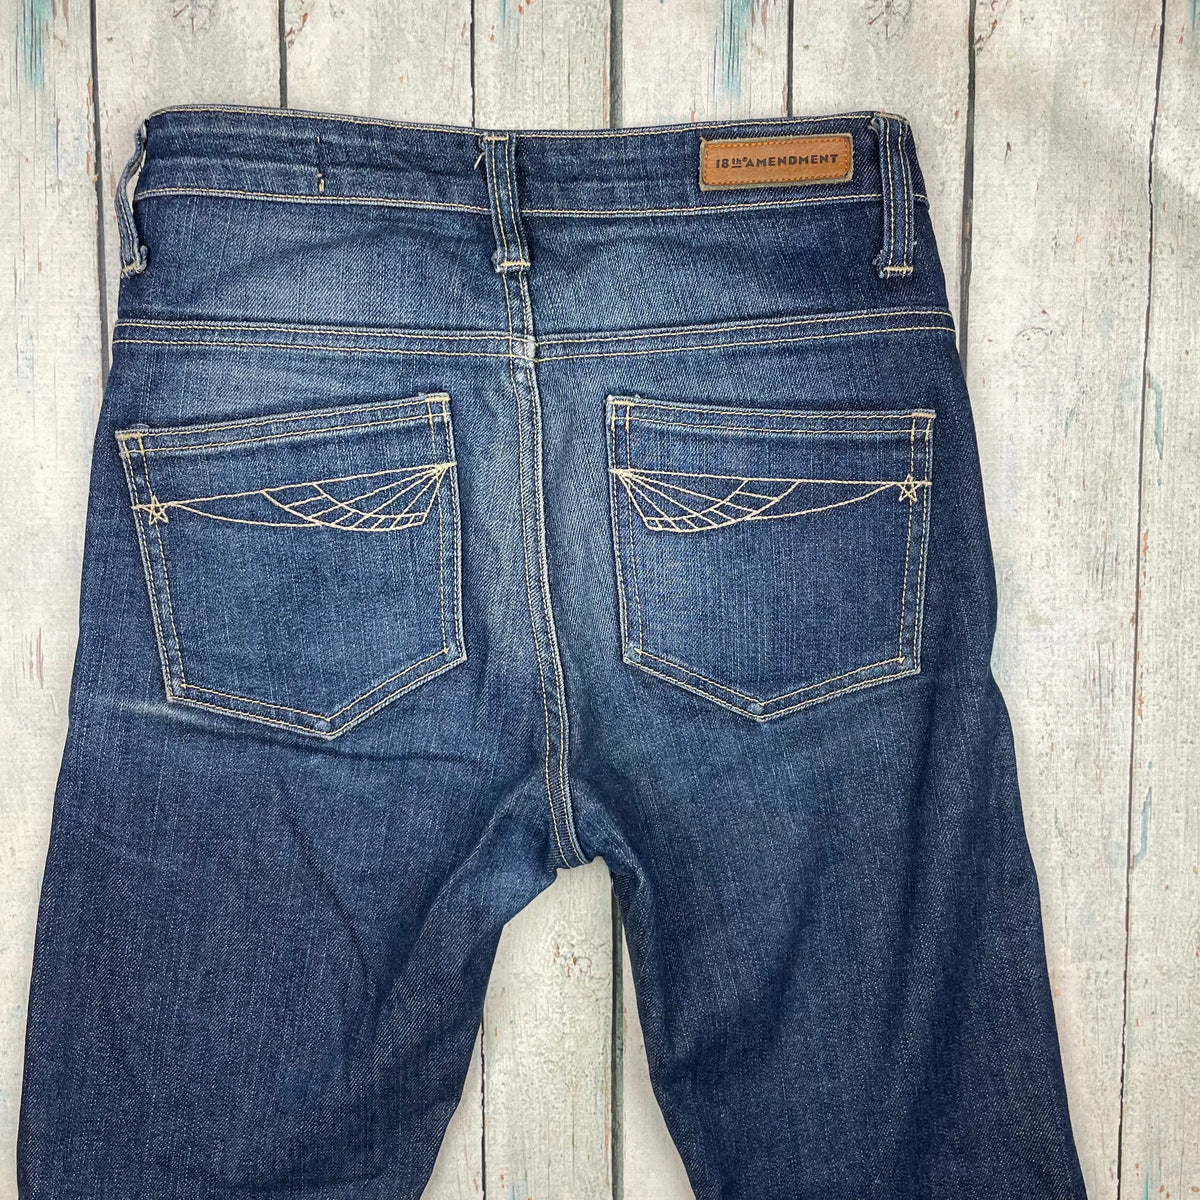 18th Amendment Aussie Made 'Lollobrigida' Skinny Jeans- Size 24 – Jean Pool